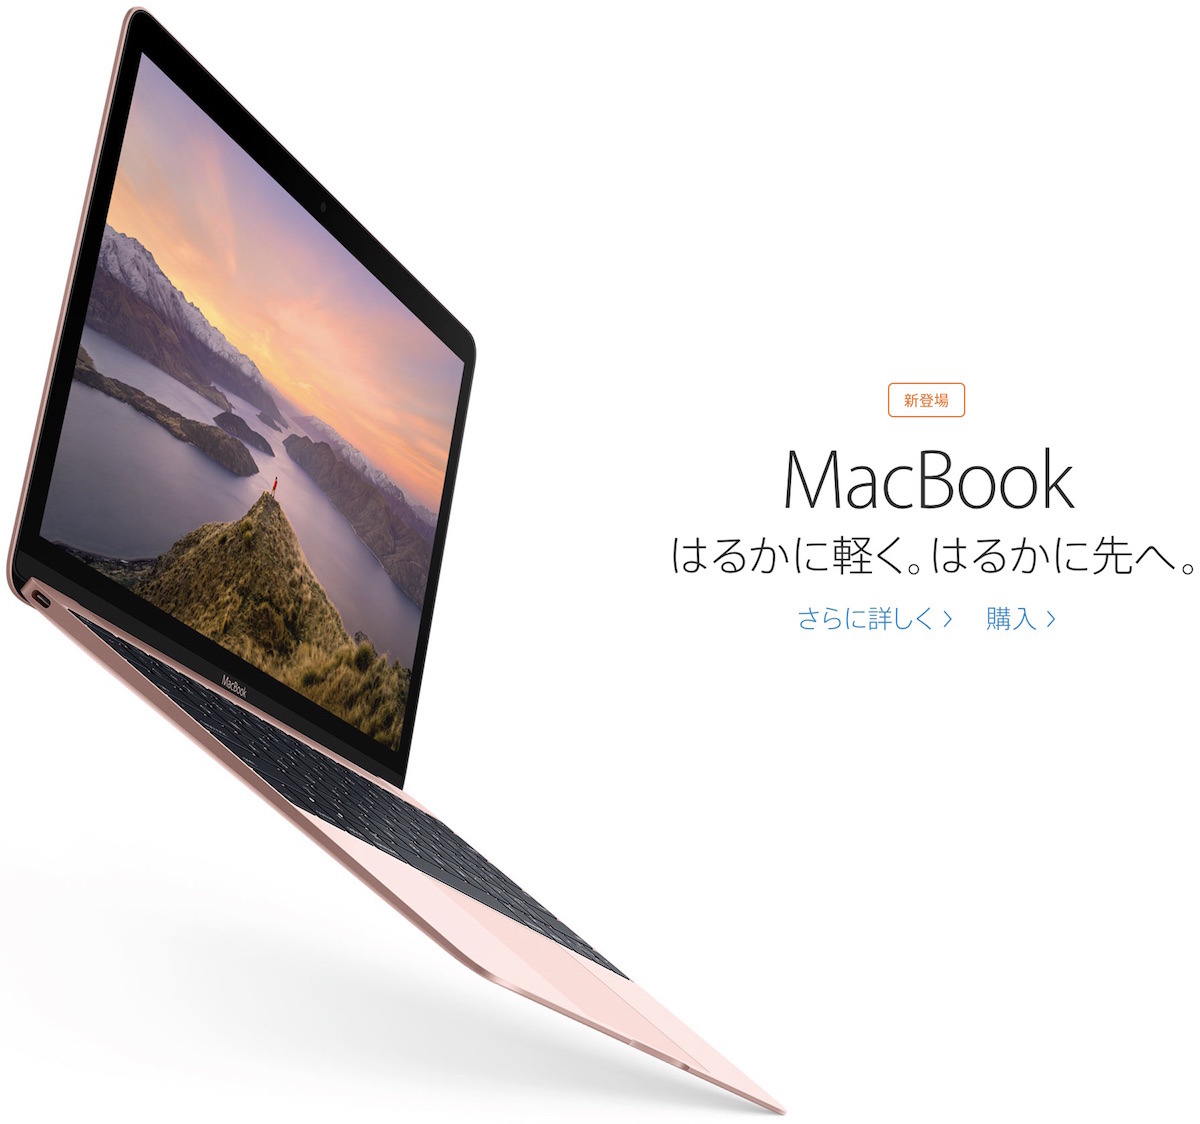 比較】新型12インチ「MacBook (early 2016)」を旧型と比較してみた 